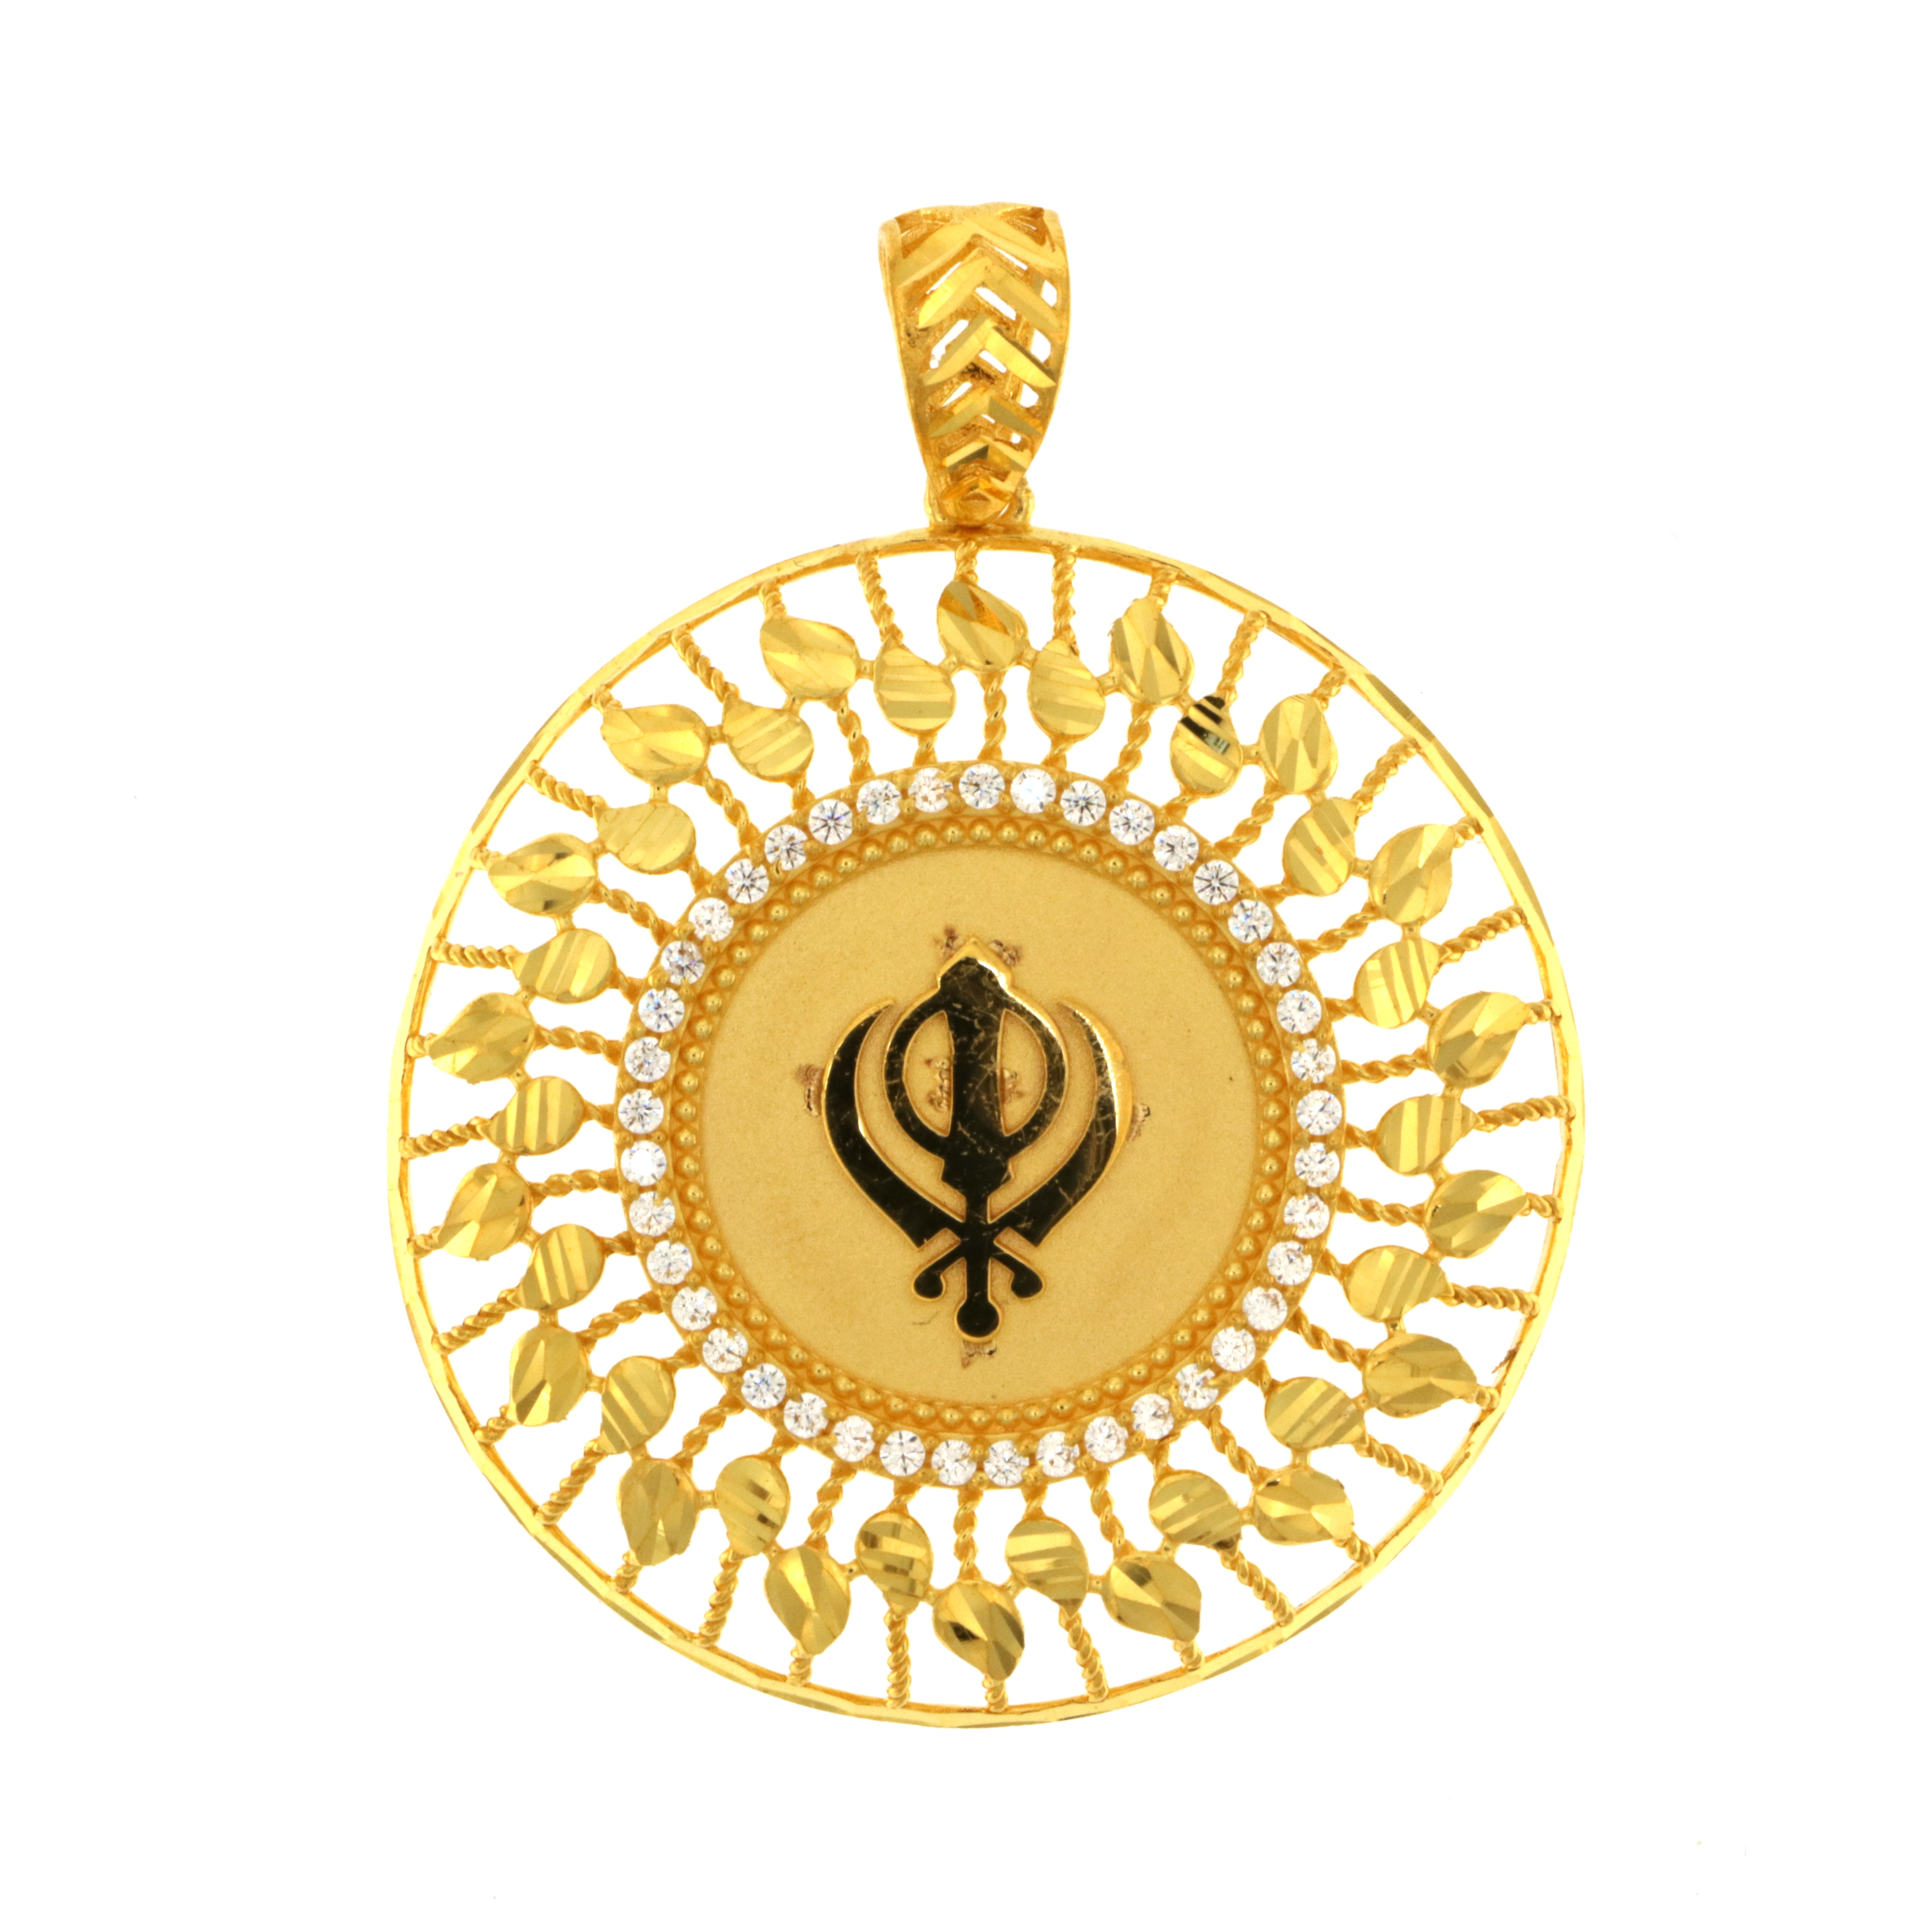 22ct Real Gold Asian/Indian/Pakistani Style Khanda Pendant